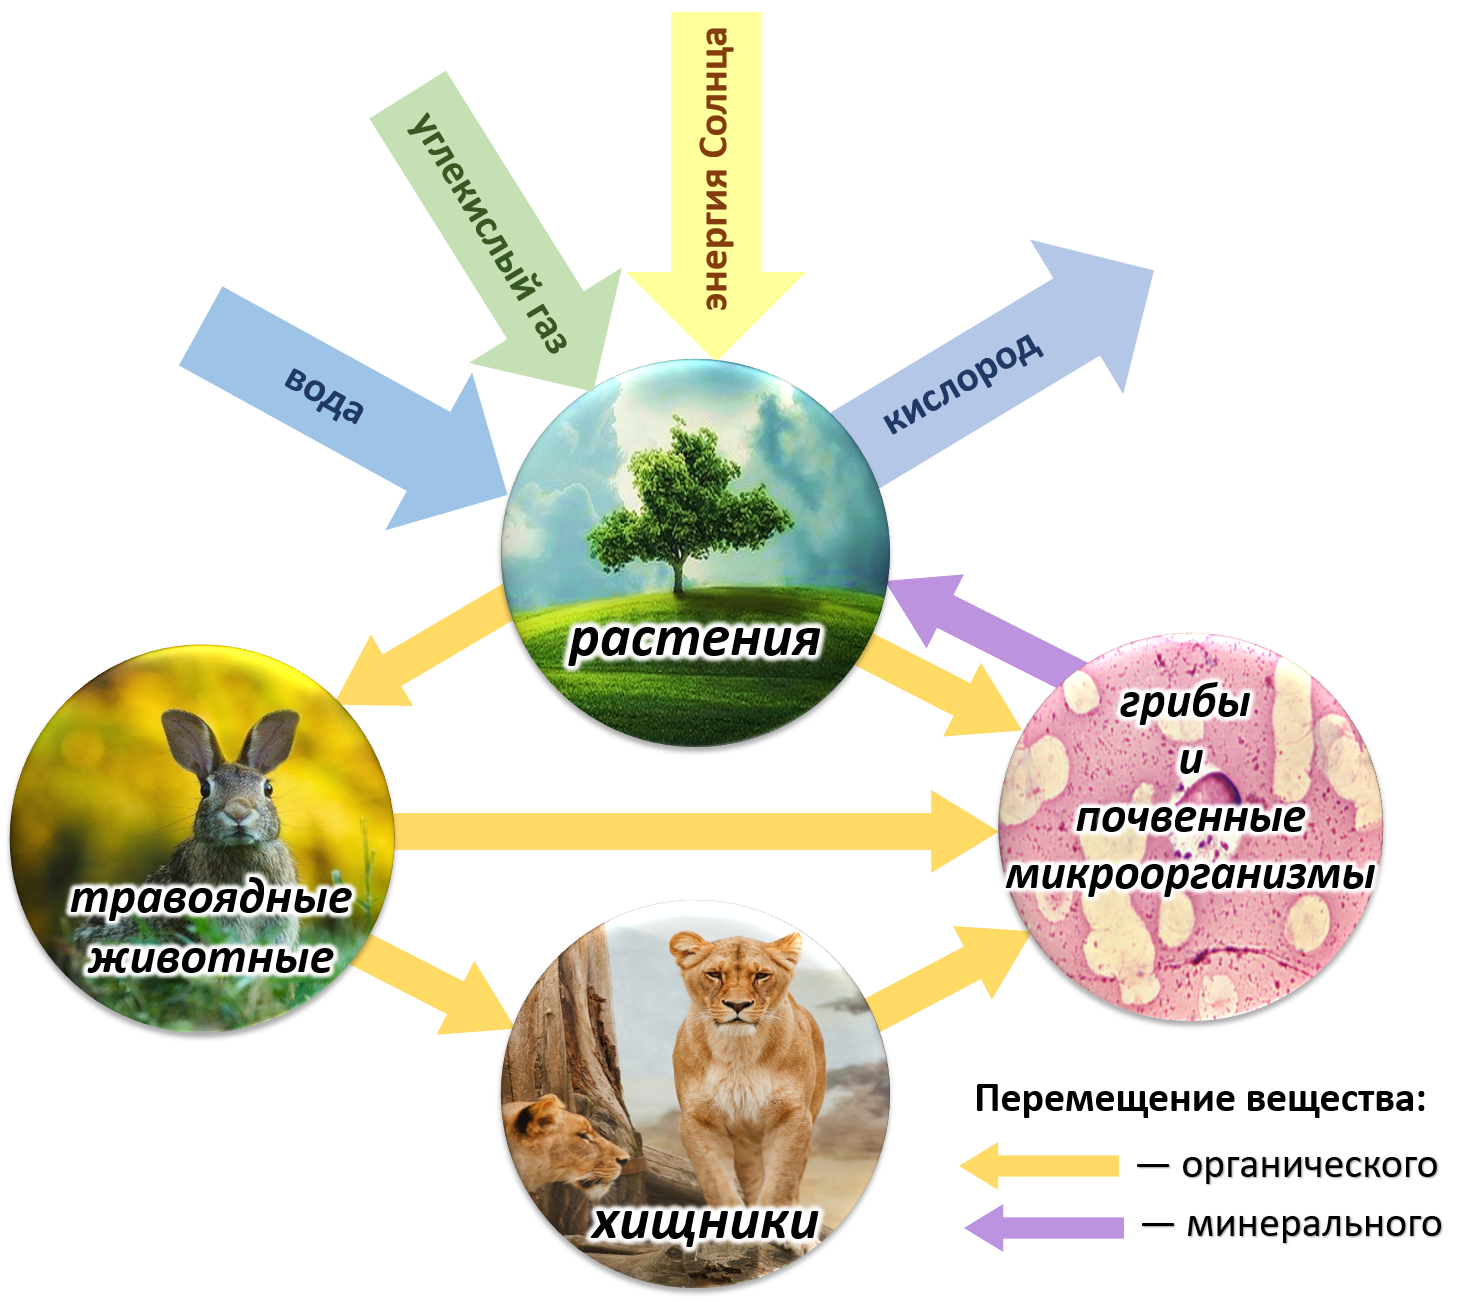 Какую роль играет биосфера в жизни людей. Биотический круговорот веществ в биосфере. Круговорот веществ и энергии в биосфере схема. Круговорот веществ в природе Биосфера. Схема биологического круговорота в природе.